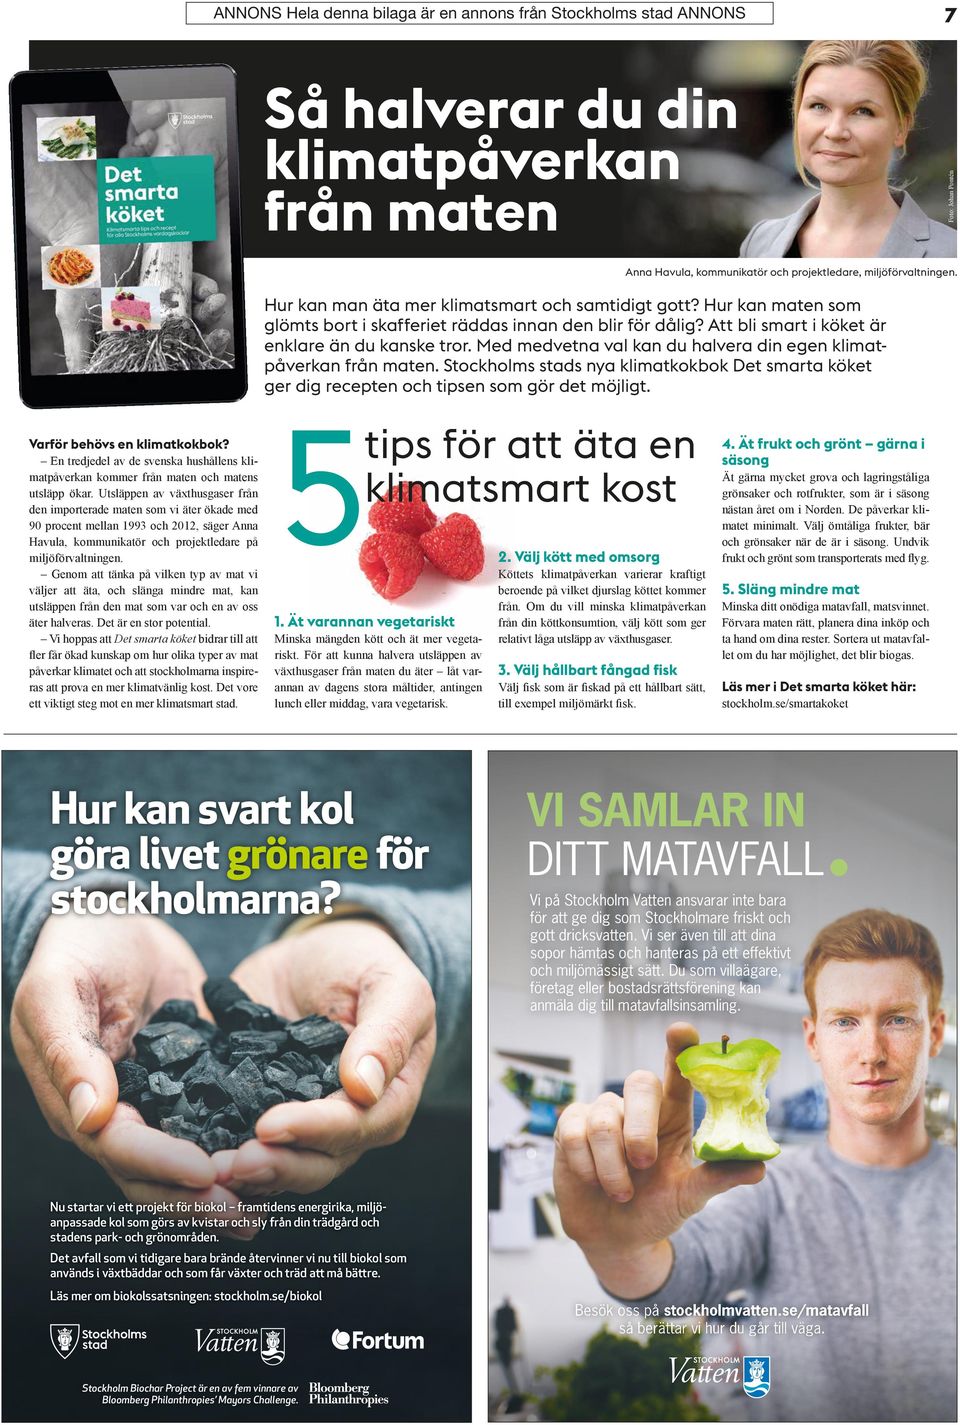 Med medvetna val kan du halvera din egen klimatpåverkan från maten. Stockholms stads nya klimatkokbok Det smarta köket ger dig recepten och tipsen som gör det möjligt. Varför behövs en klimatkokbok?